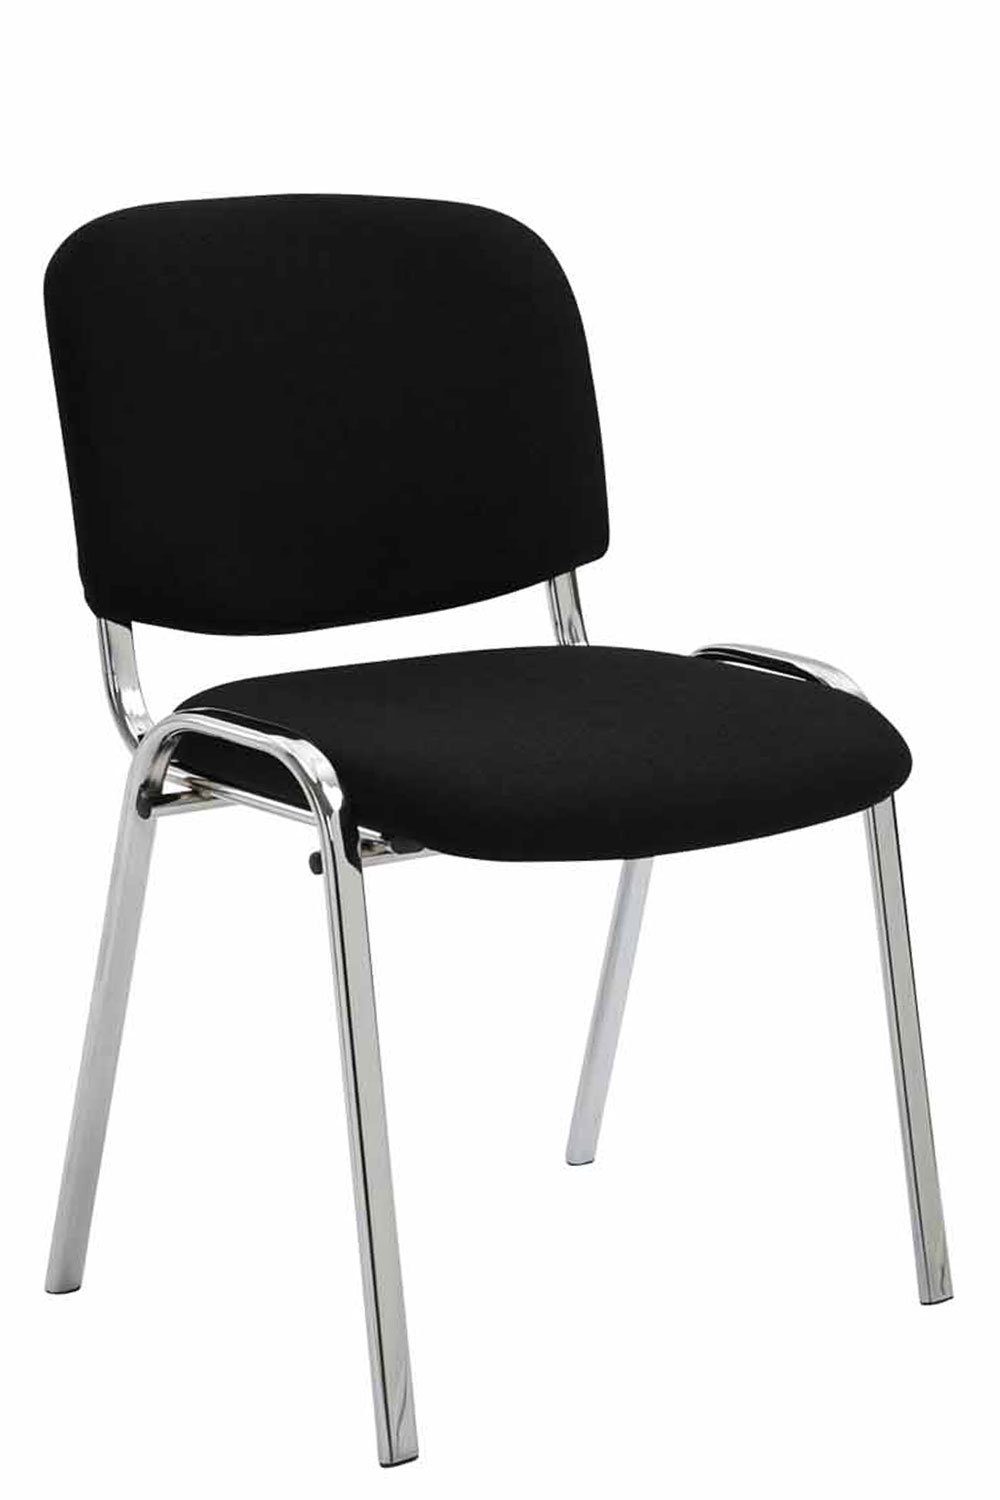 Polsterung - chrom Stoff - Konferenzstuhl Metall Besucherstuhl schwarz Warteraumstuhl - Sitzfläche: (Besprechungsstuhl hochwertiger mit Keen Gestell: Messestuhl), - TPFLiving